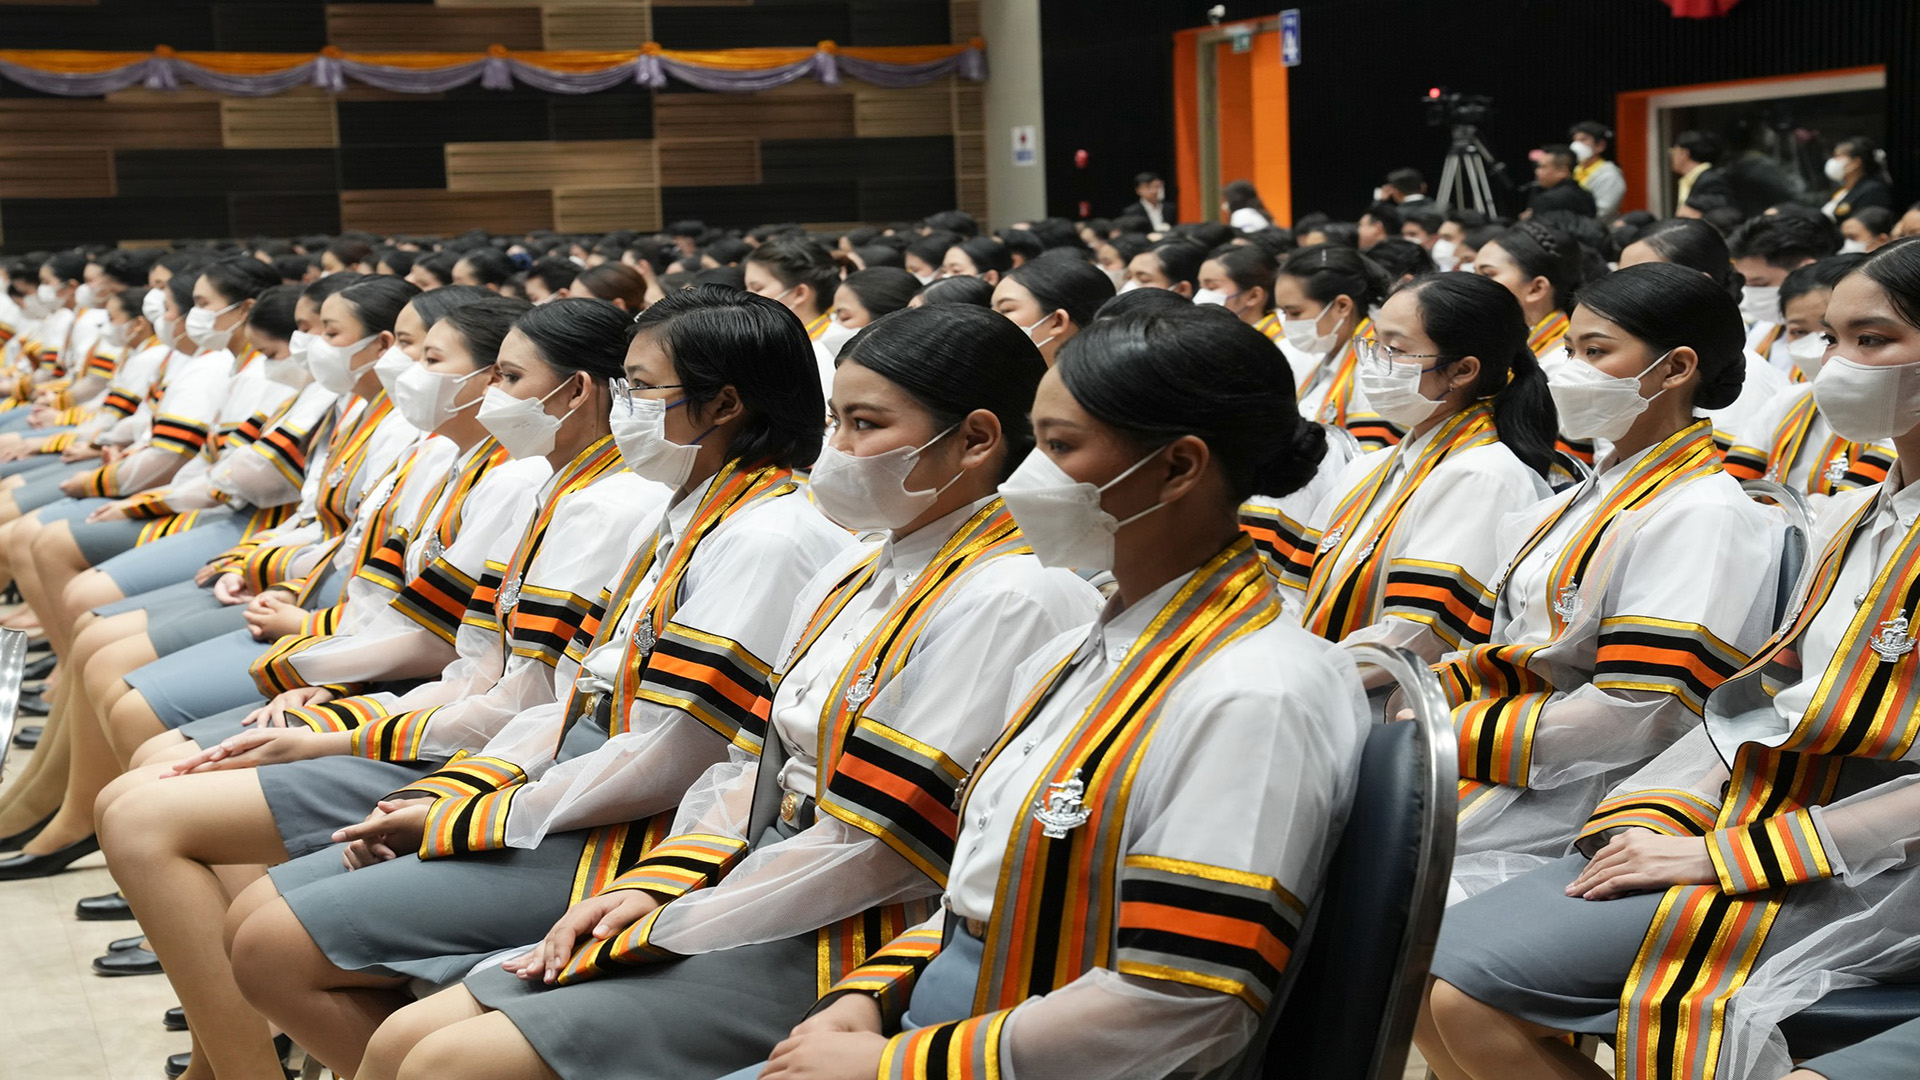 บรรยากาศวันซ้อมใหญ่ในพิธีพระราชทานปริญญาบัตร แก่ผู้สำเร็จการศึกษามหาวิทยาลัยนเรศวร ประจำปีการศึกษา 2565